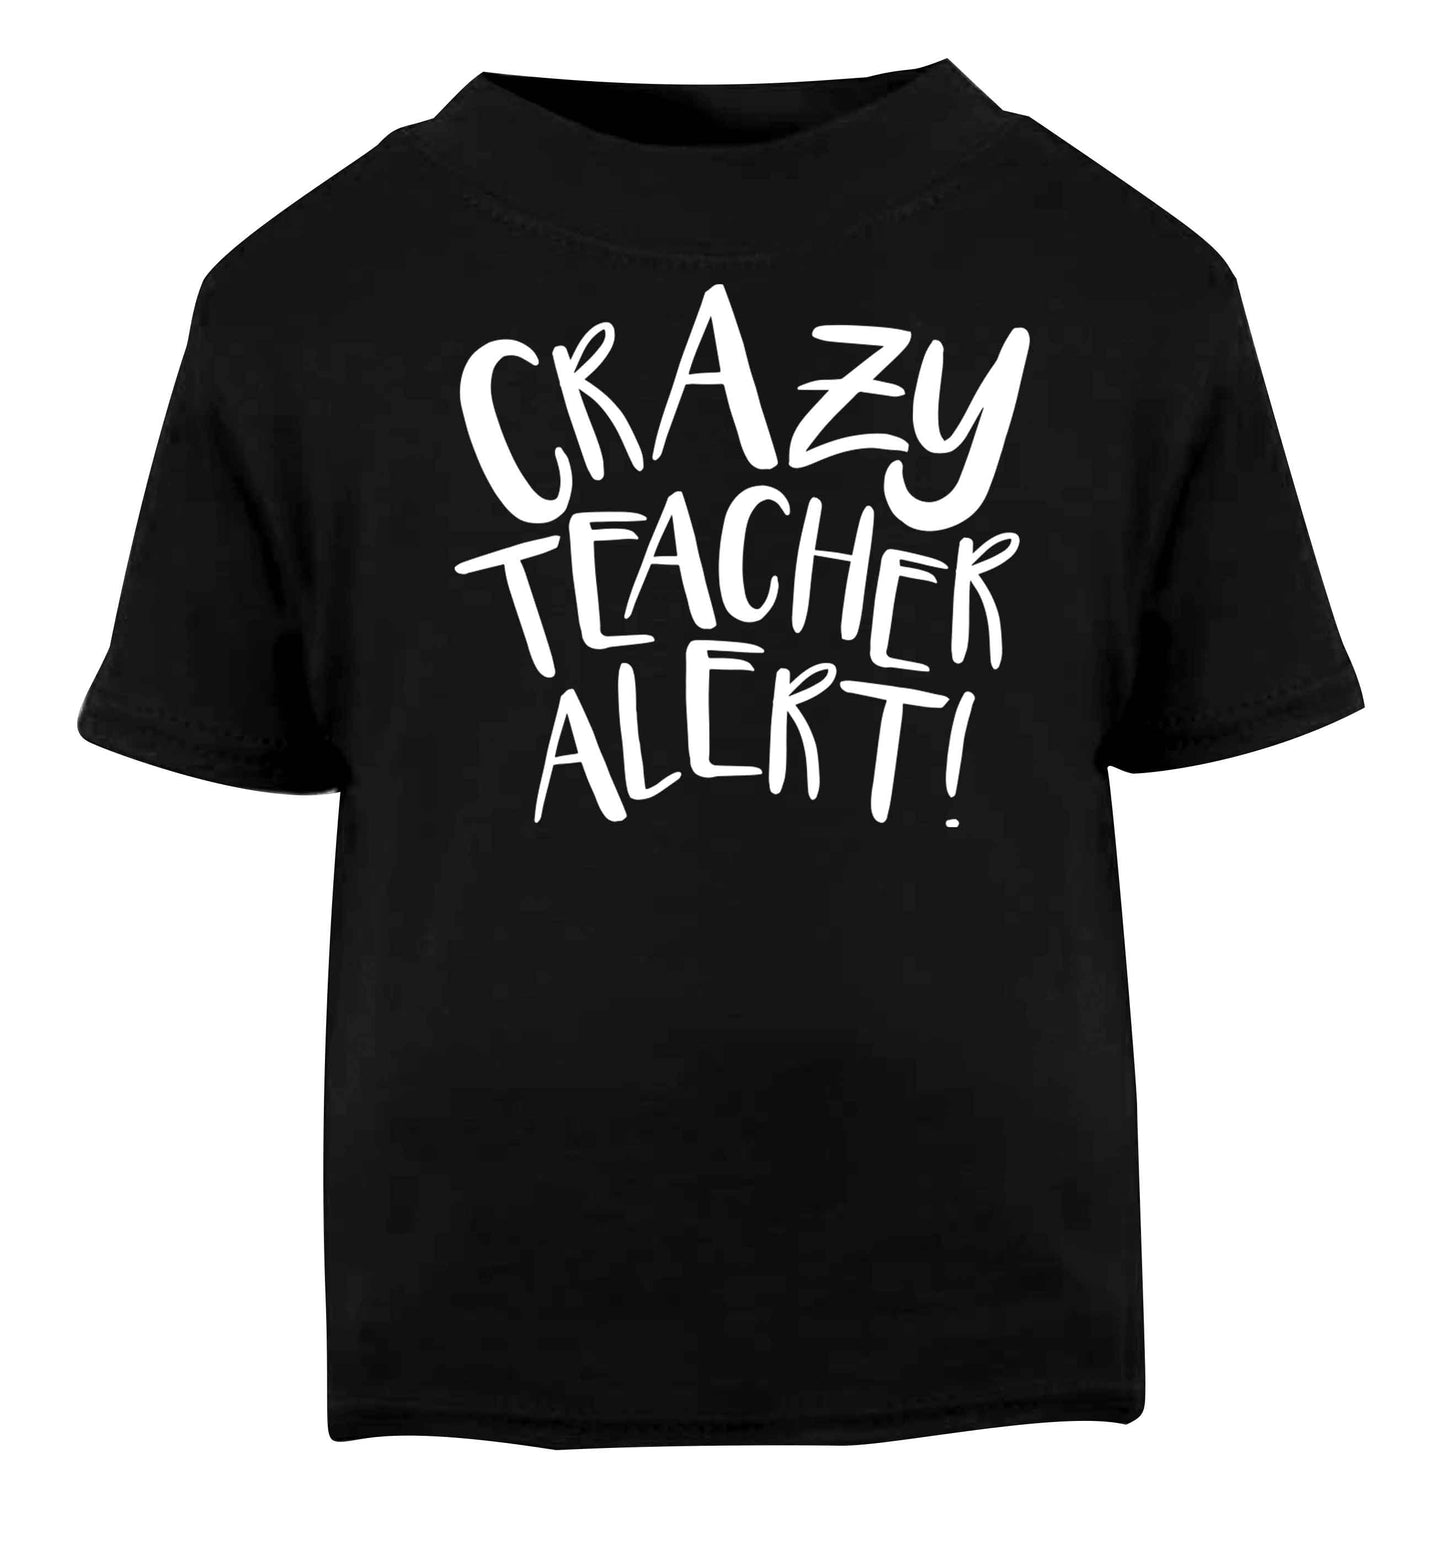 Crazy teacher alert Black baby toddler Tshirt 2 years